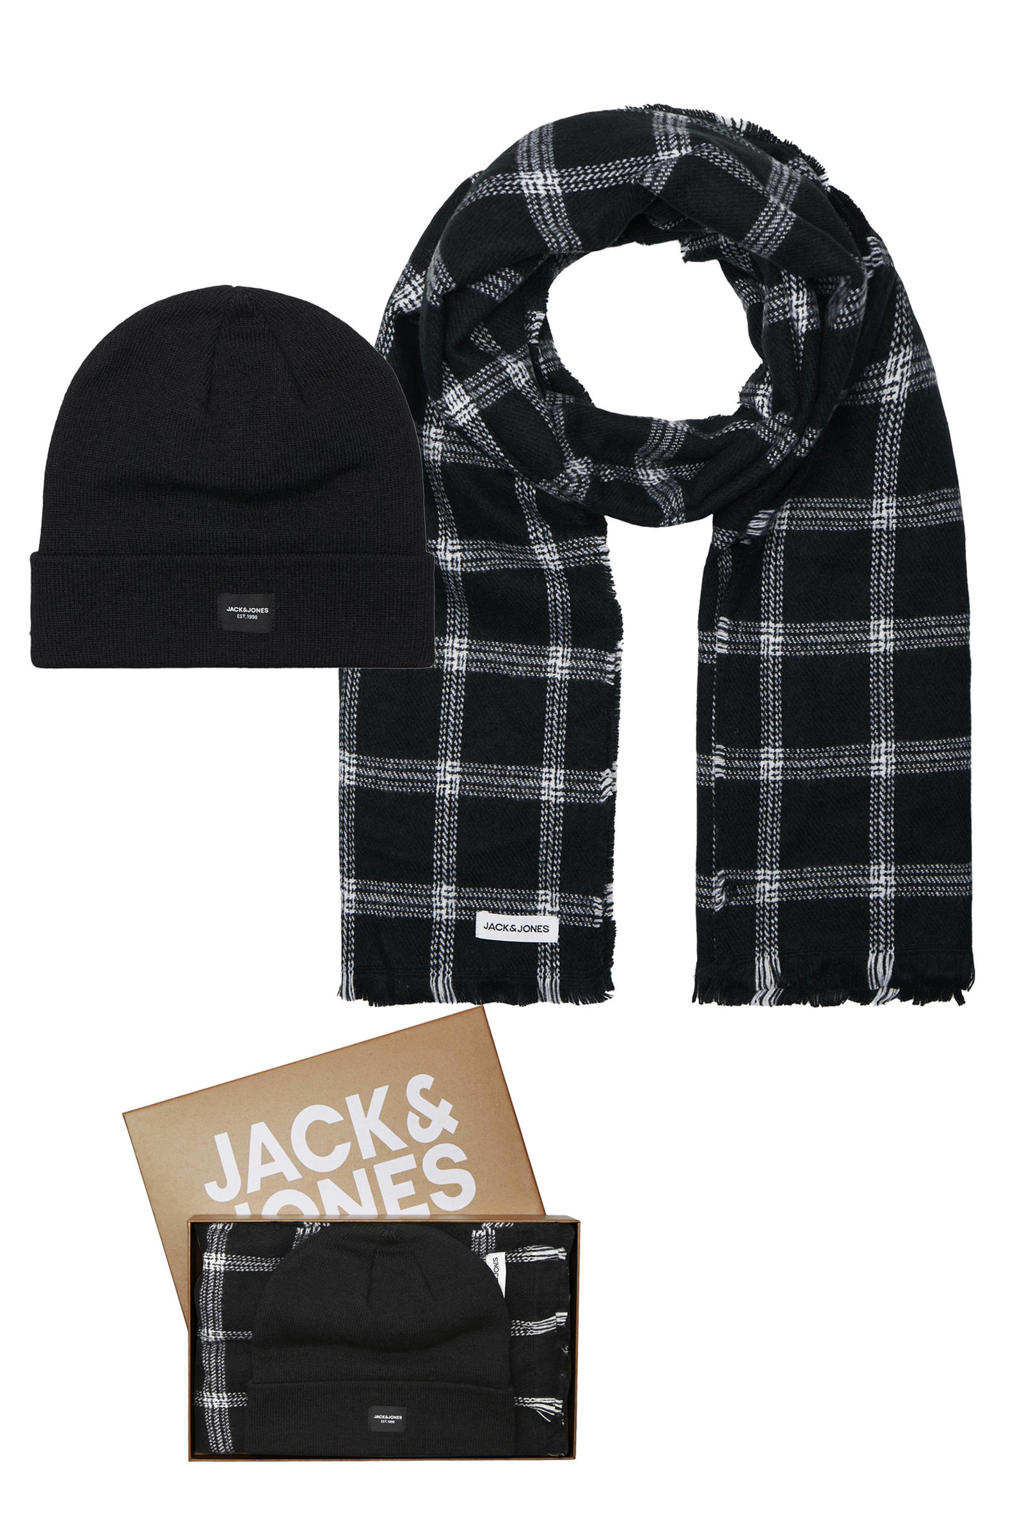 JACK & JONES giftbox muts + sjaal JACFROST zwart